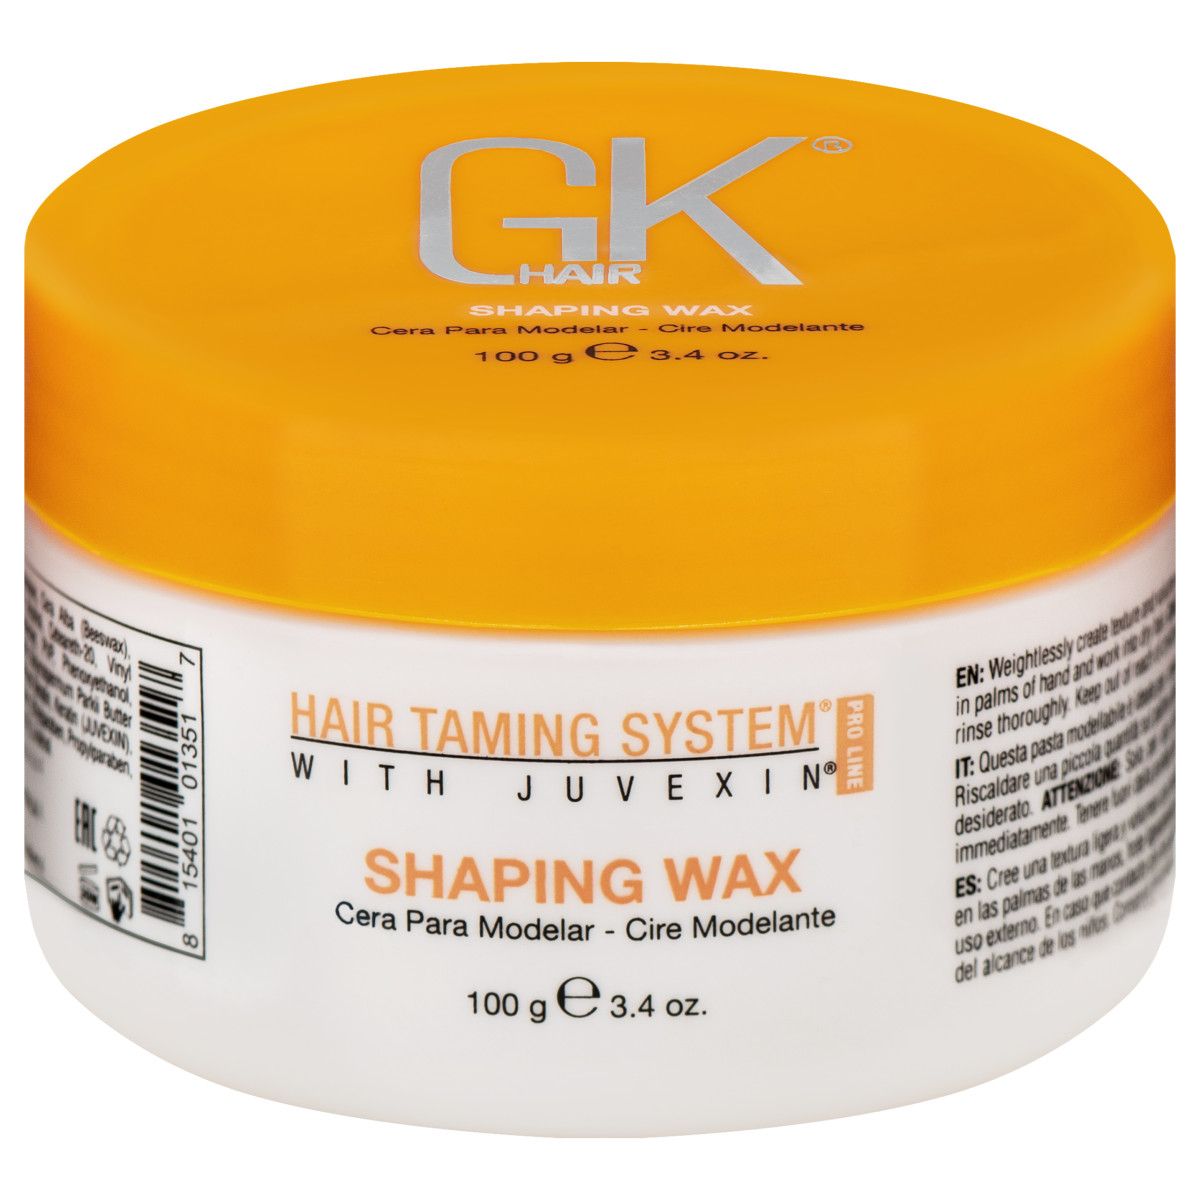 GKHair Shaping Wax - wosk do stylizacji włosów nadający teksturę, 100g